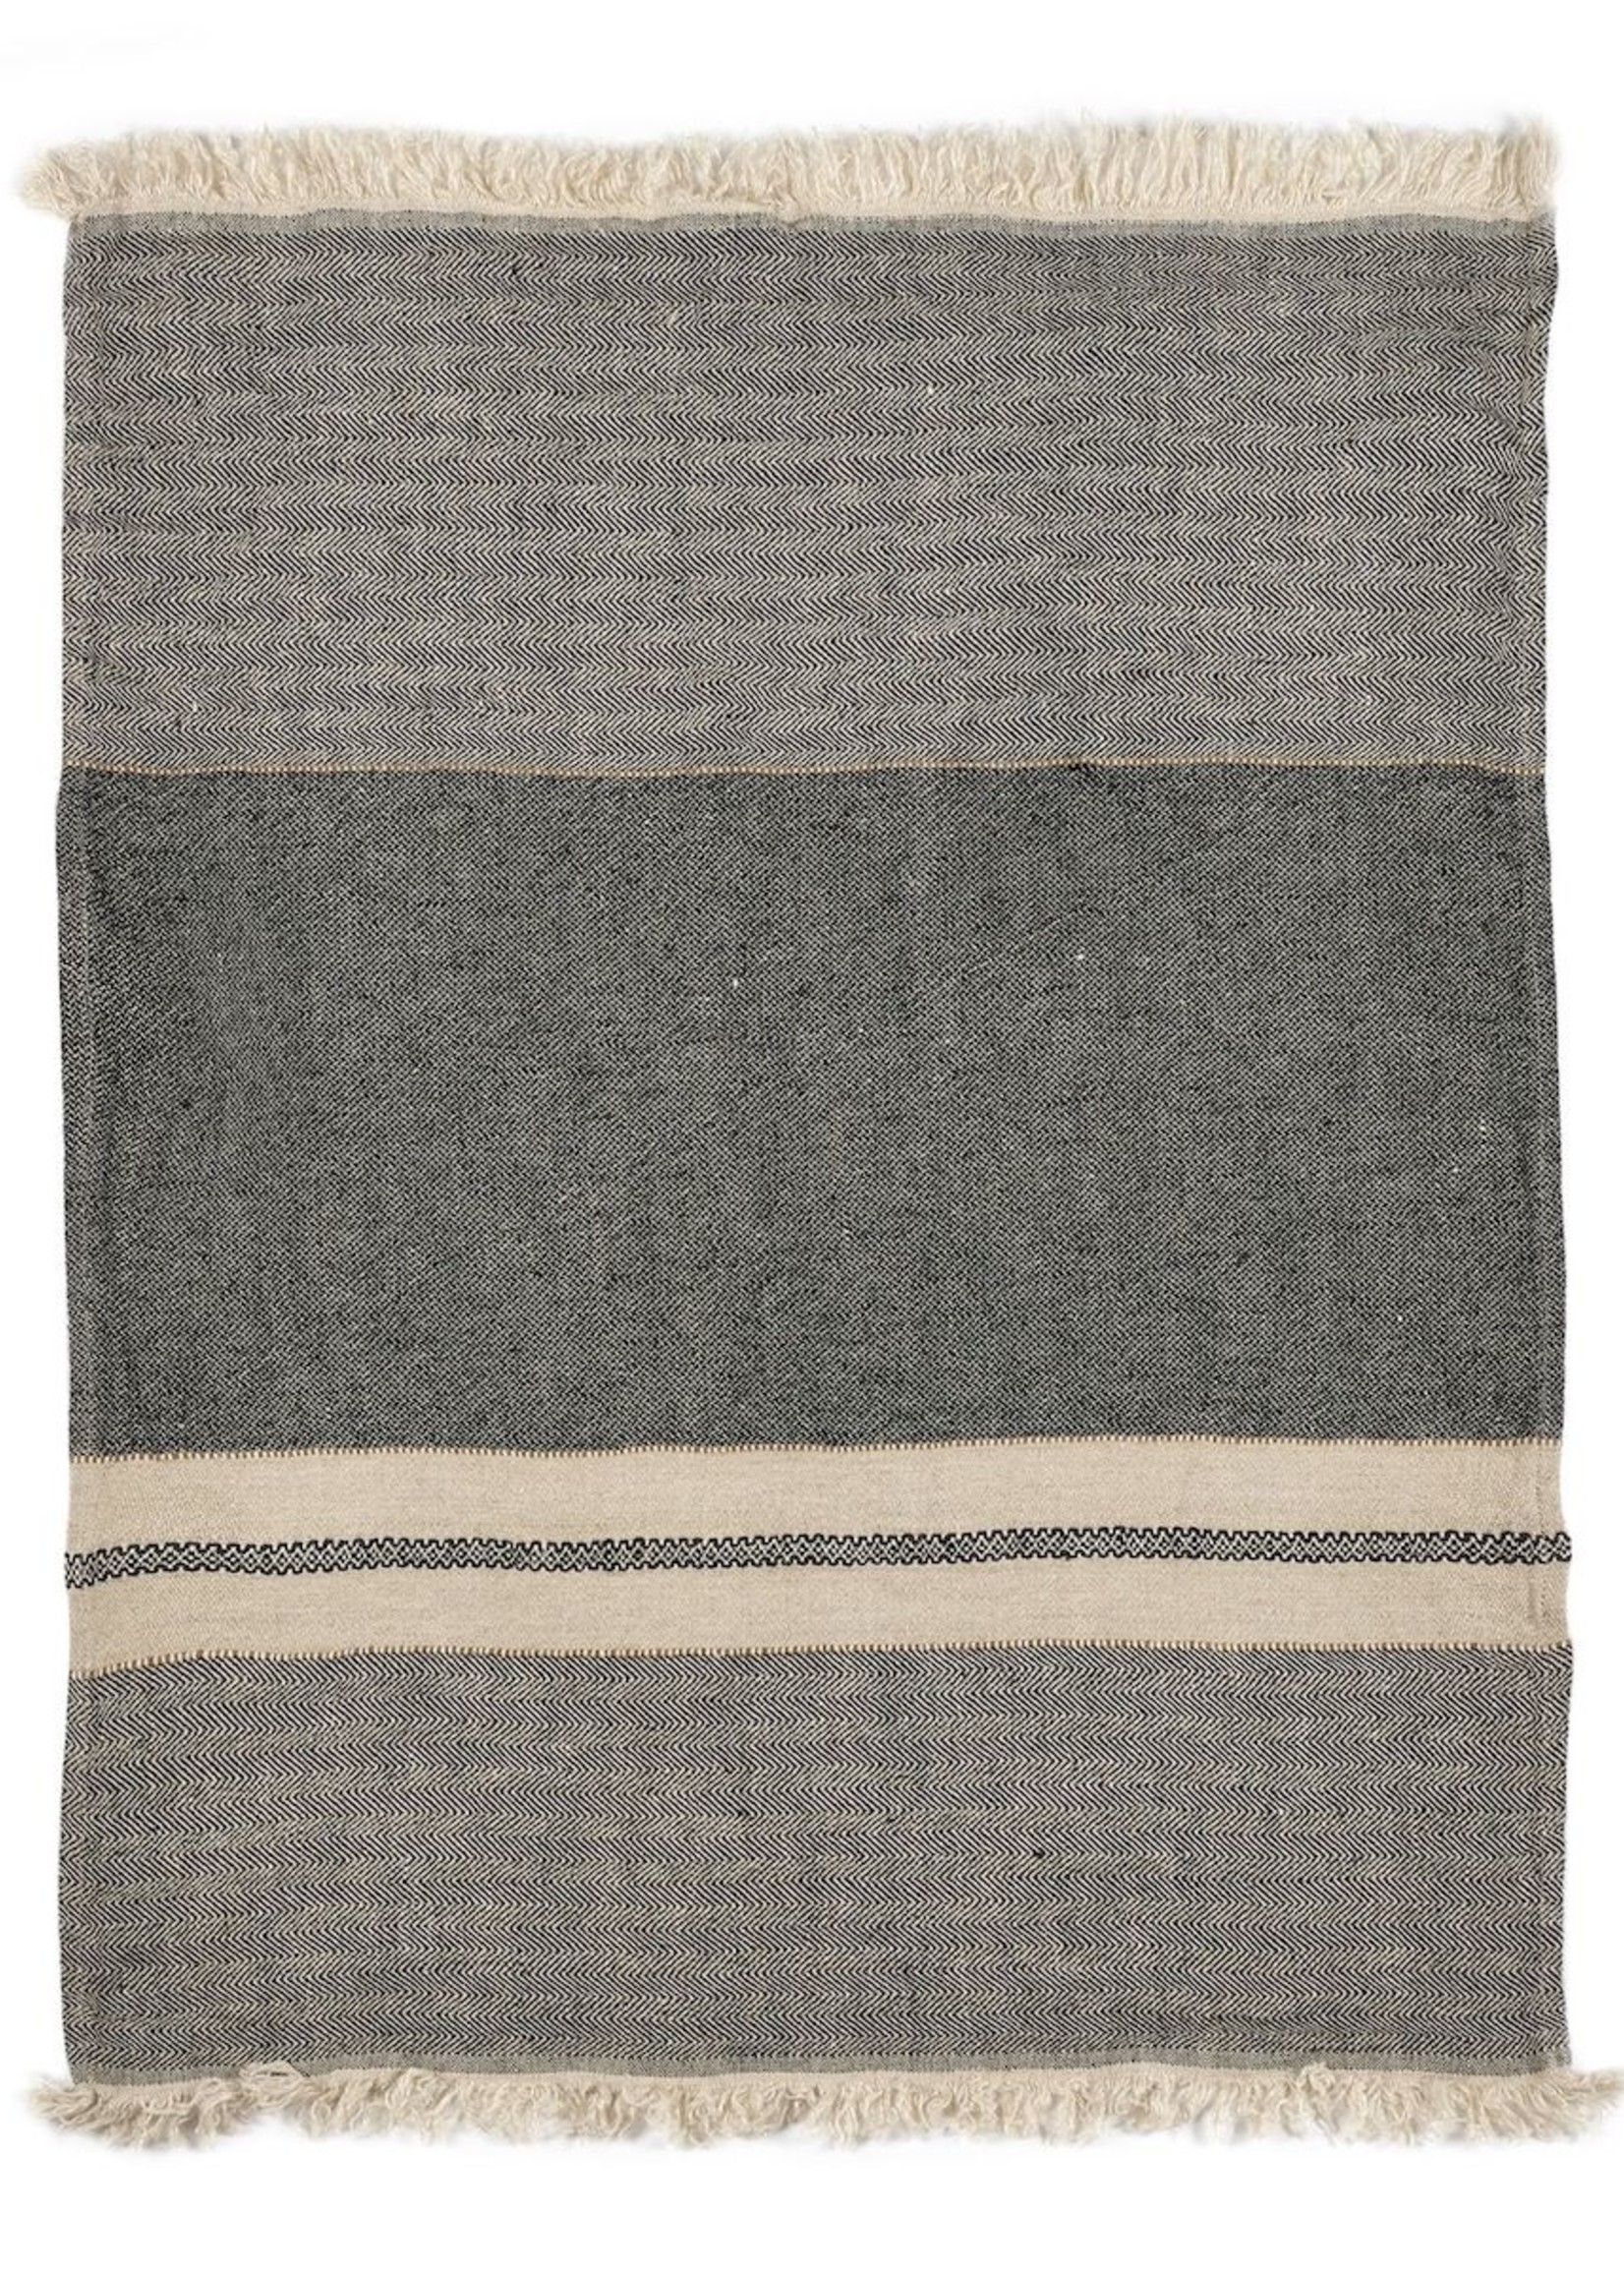 Libeco Libeco Tack Stripe Linen Towels